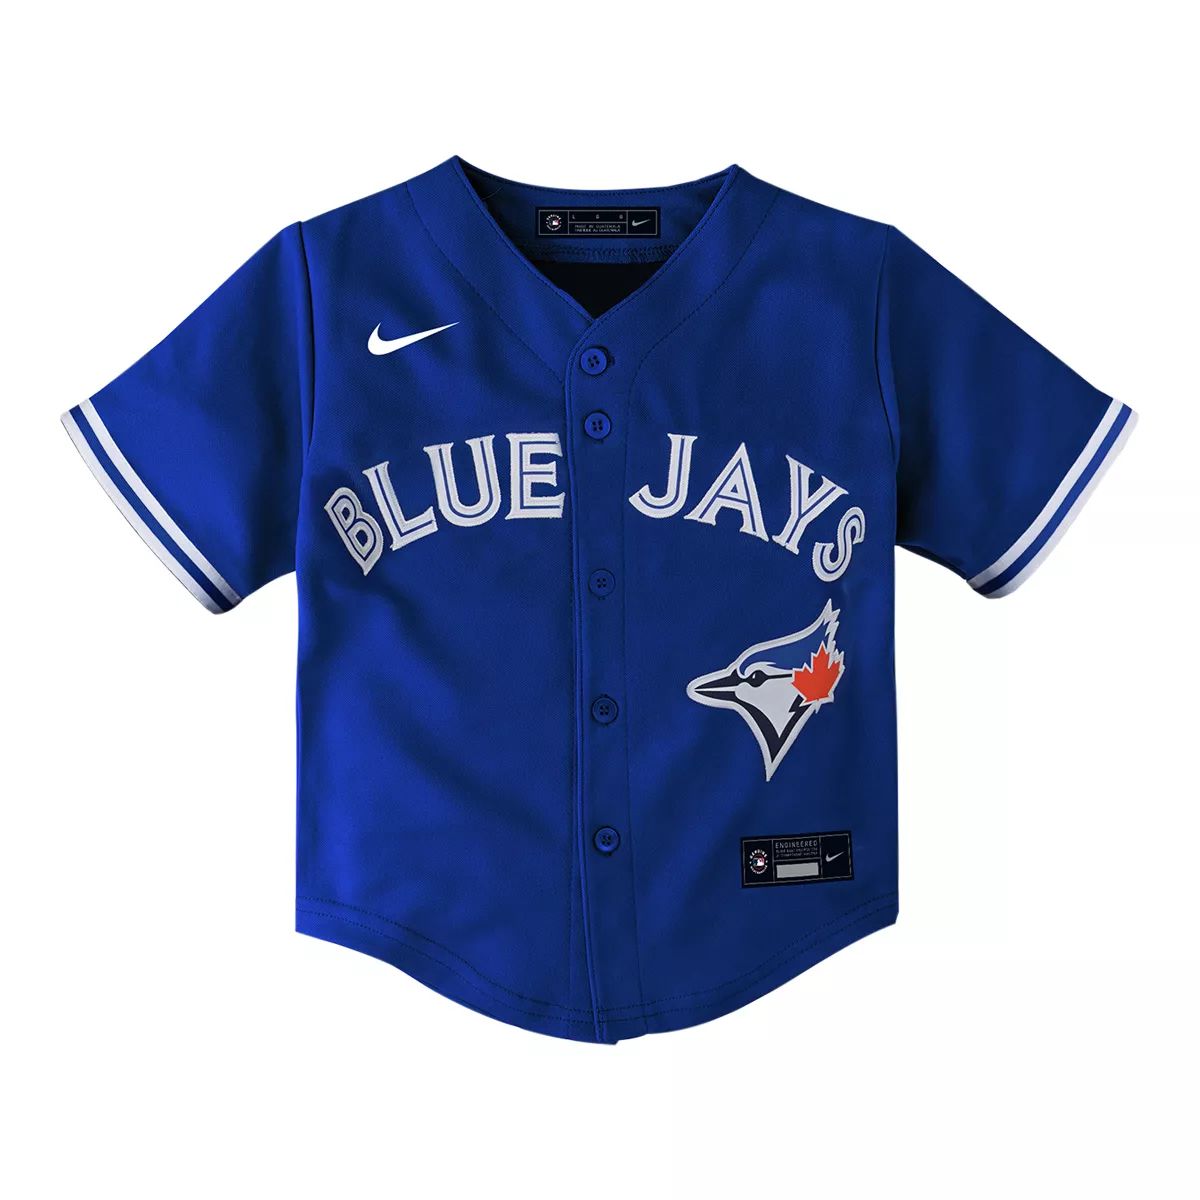 Toronto Blue Jays Nike Bo Bichette Jersey, Baby, Baseball, MLB